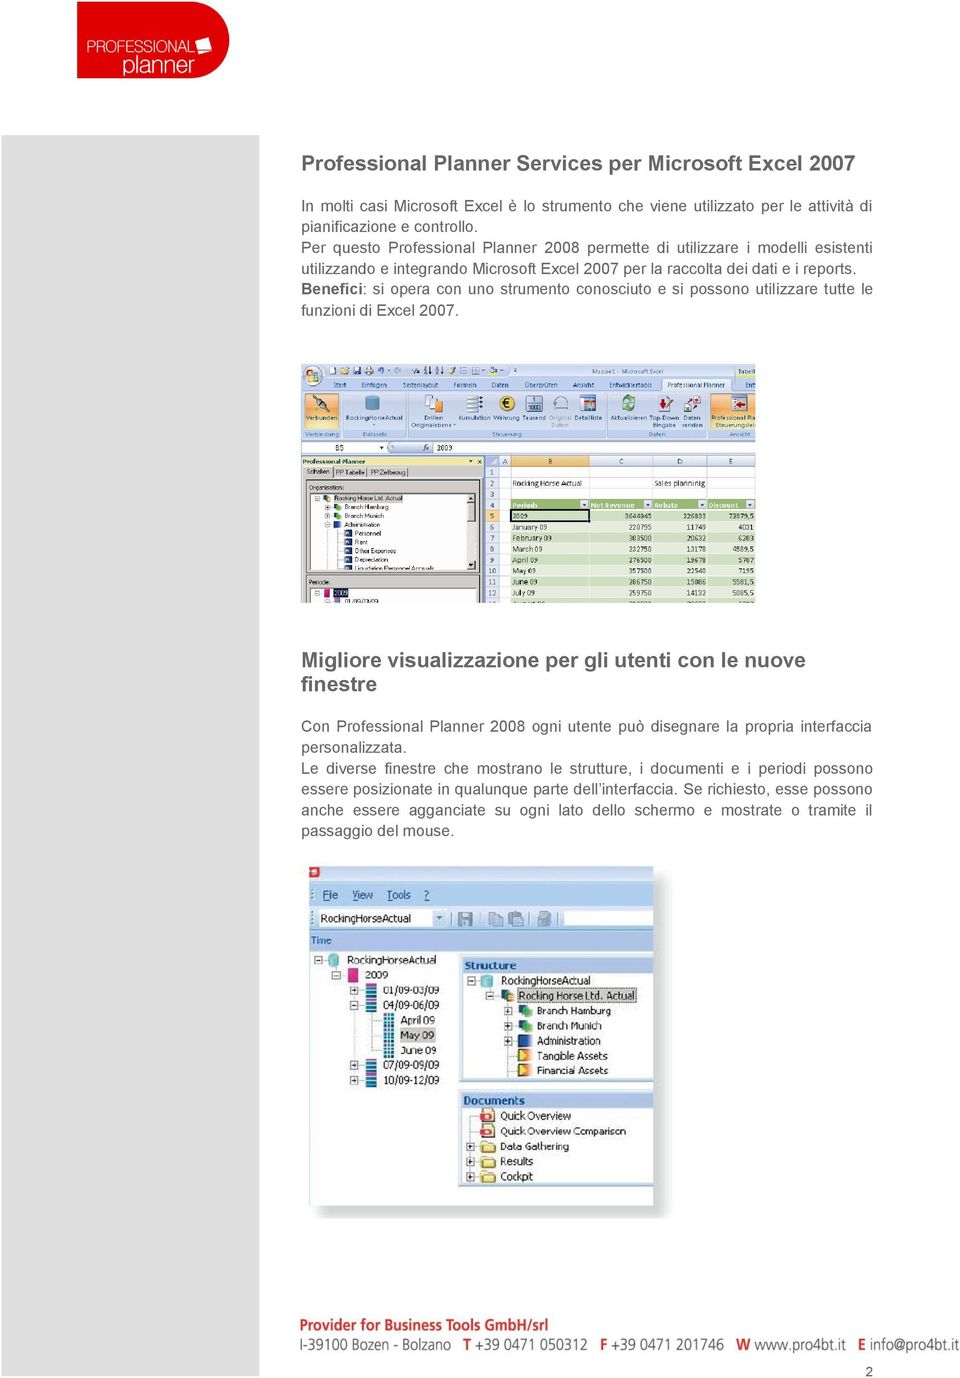 Benefici: si opera con uno strumento conosciuto e si possono utilizzare tutte le funzioni di Excel 2007.